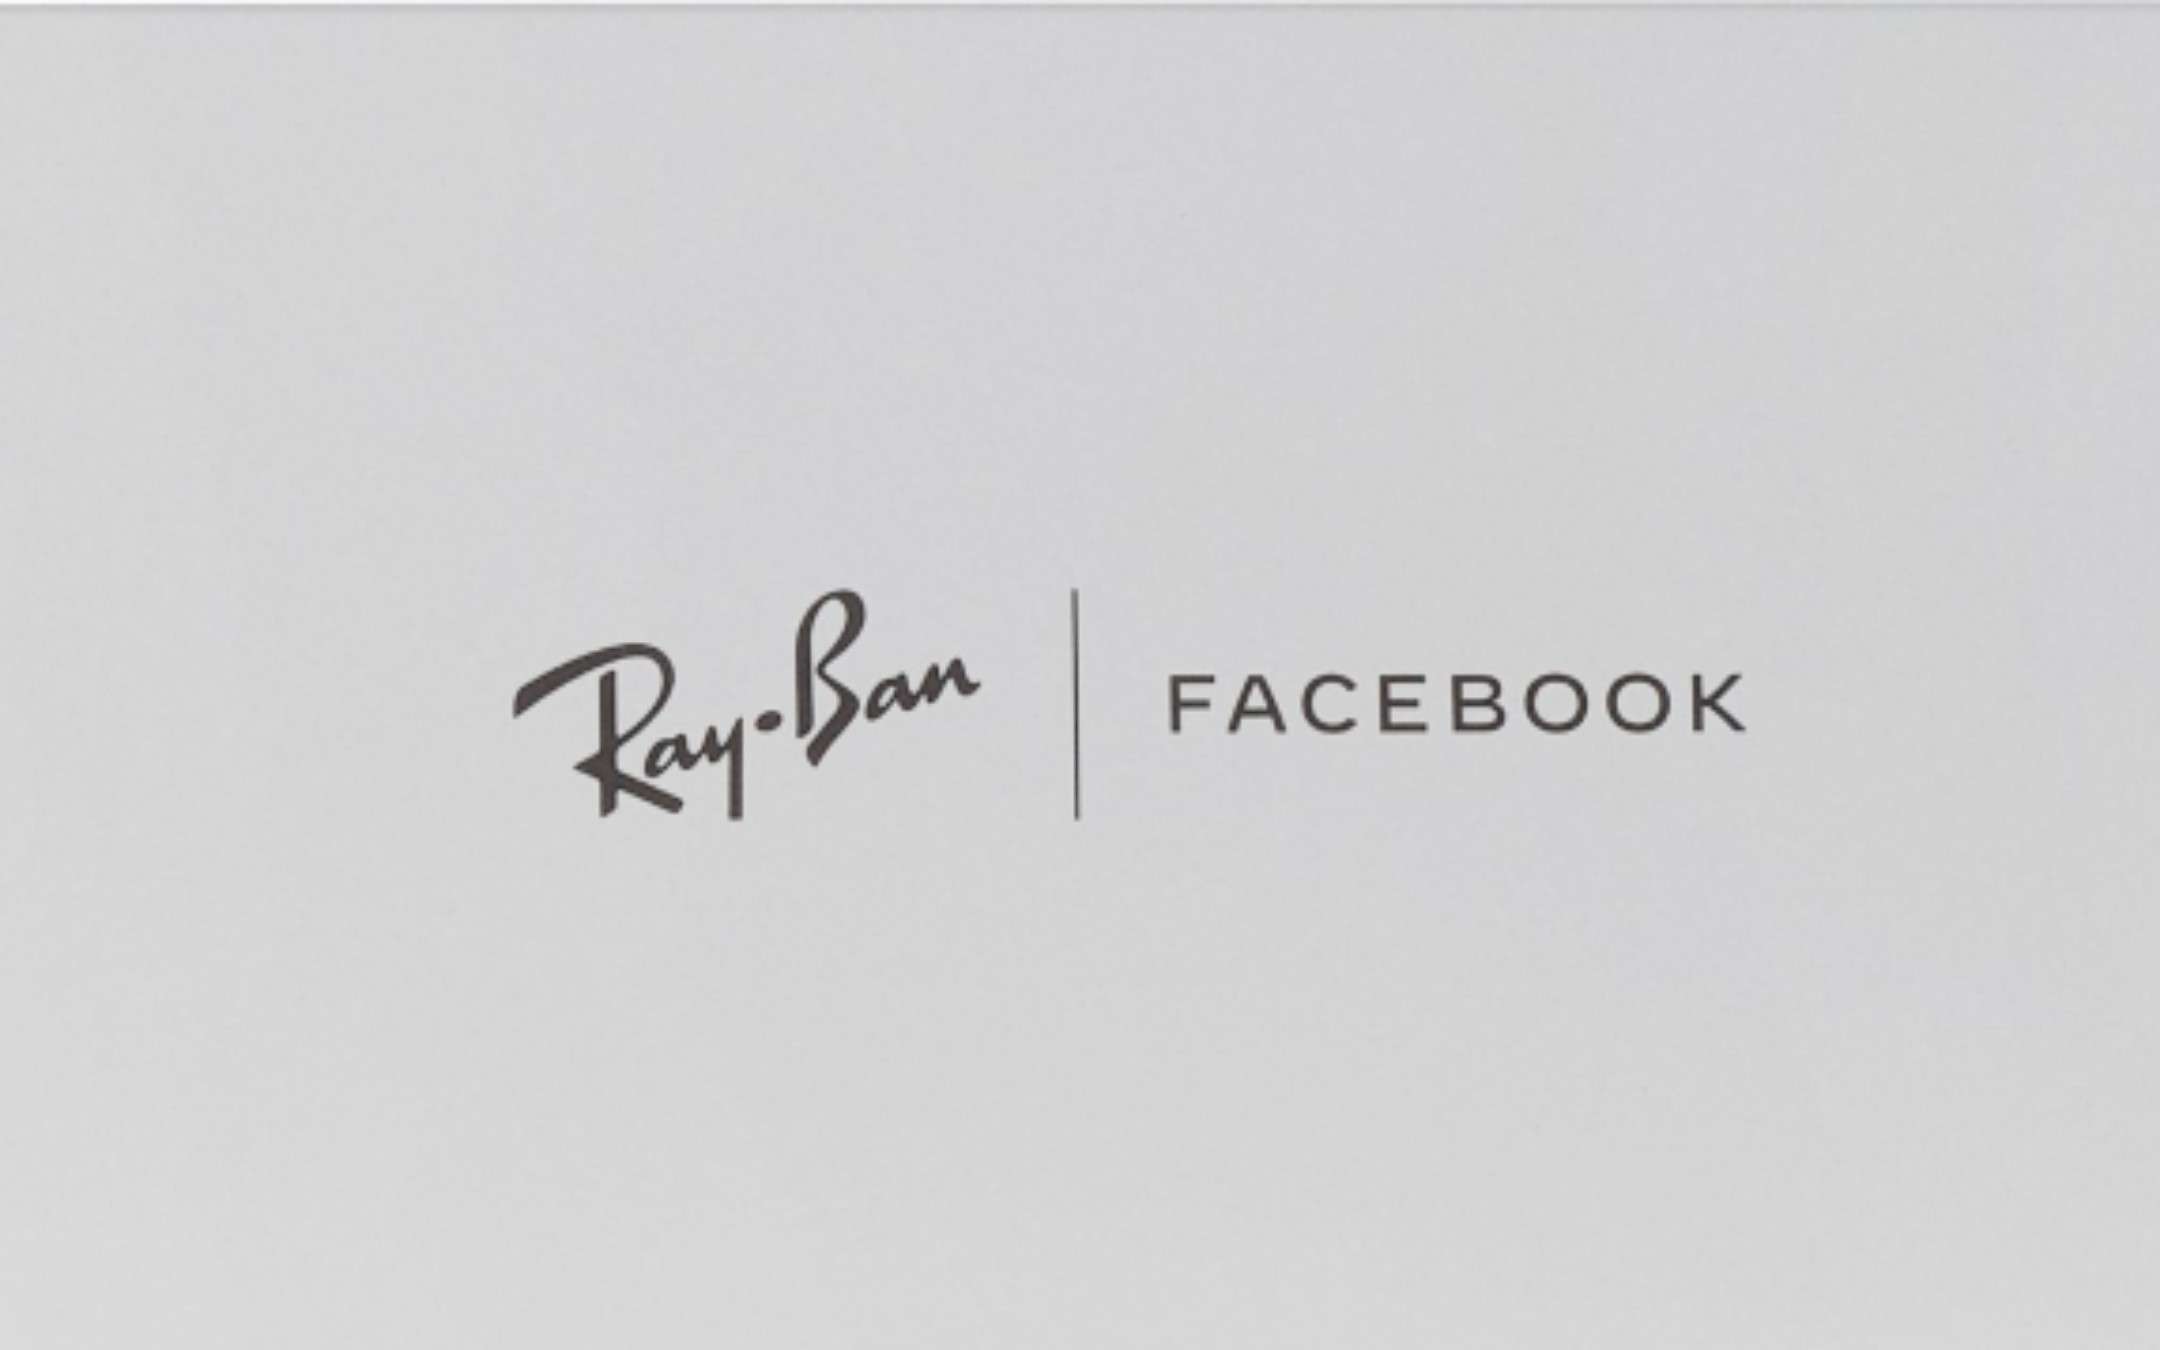 Facebook e Ray-Ban: le immagini prima del lancio